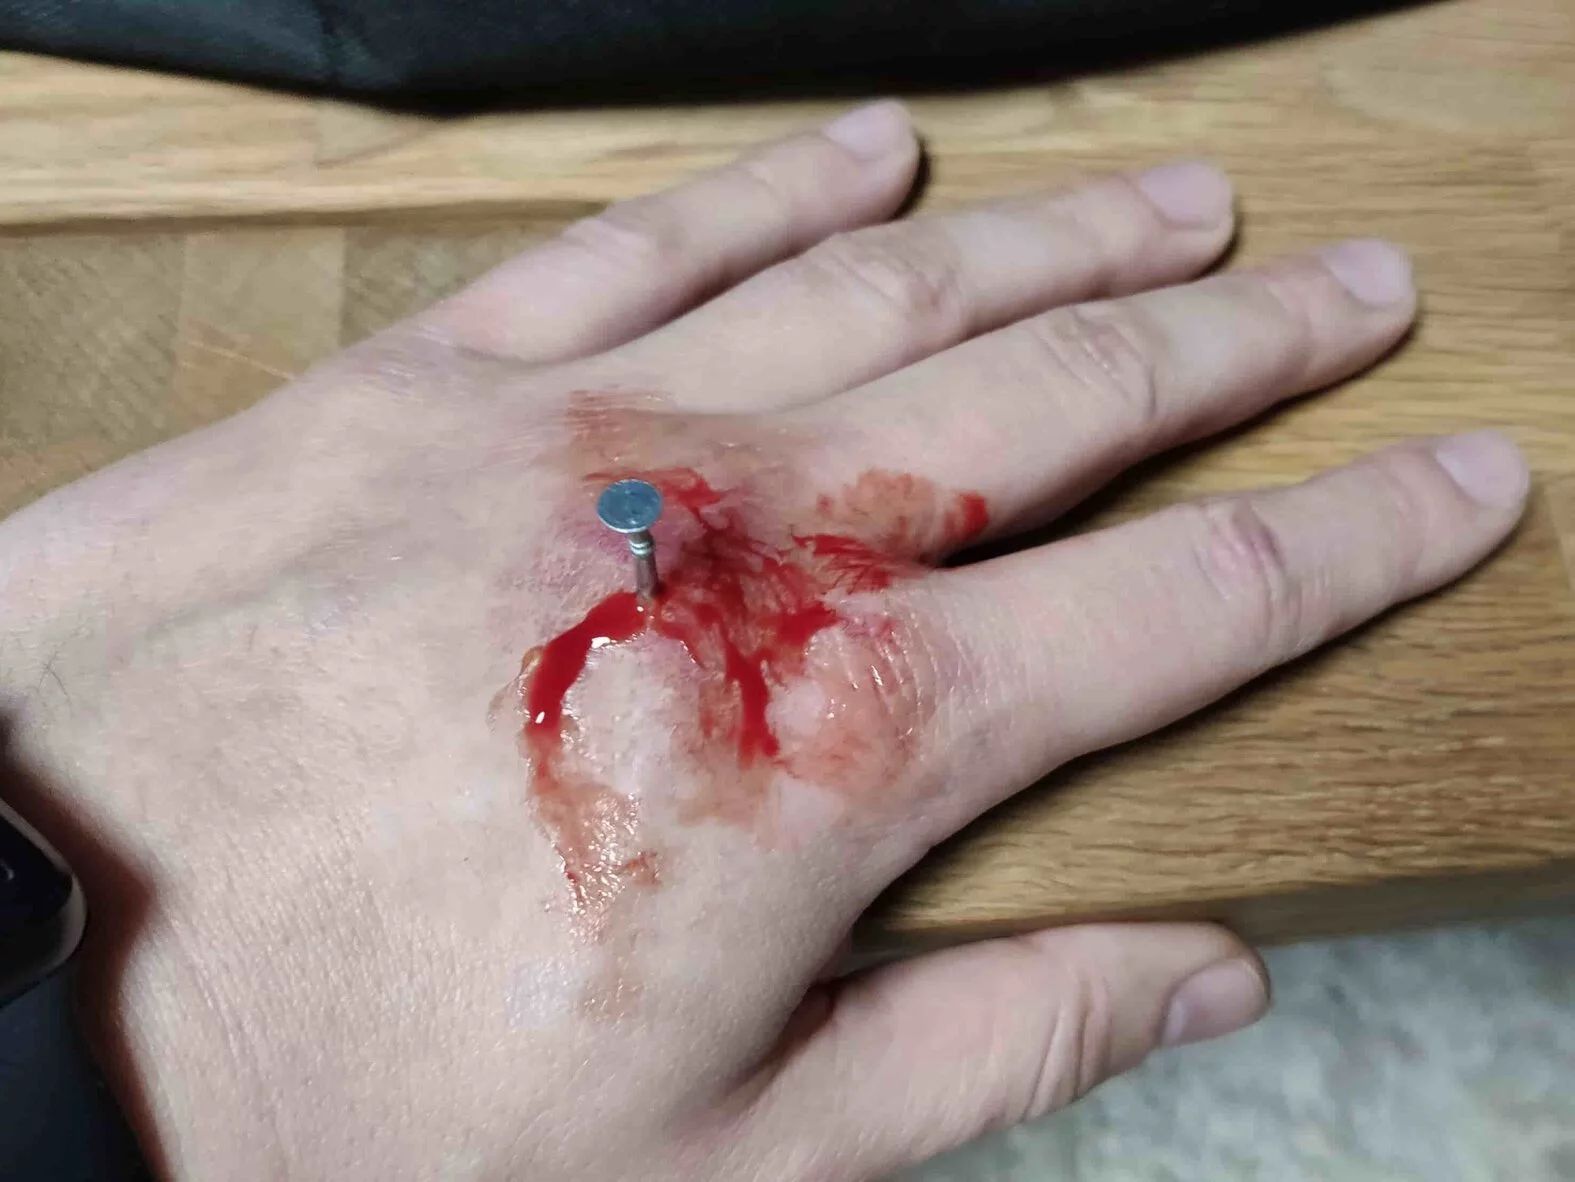 Pfählungsverletzung der Hand druch einen Nagel